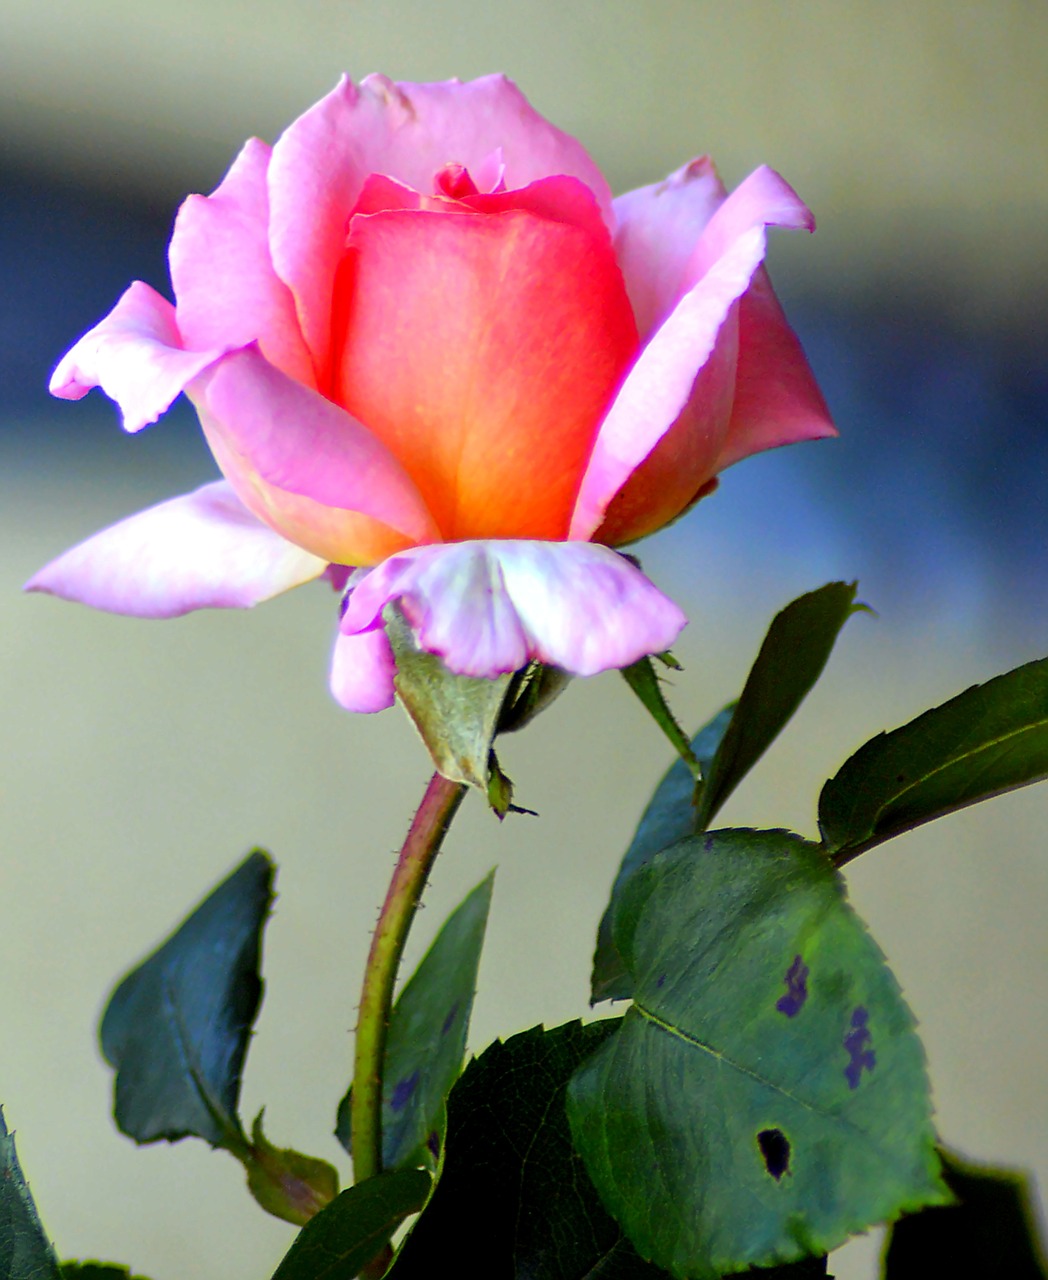 Image - flower rose pink blossom bloom